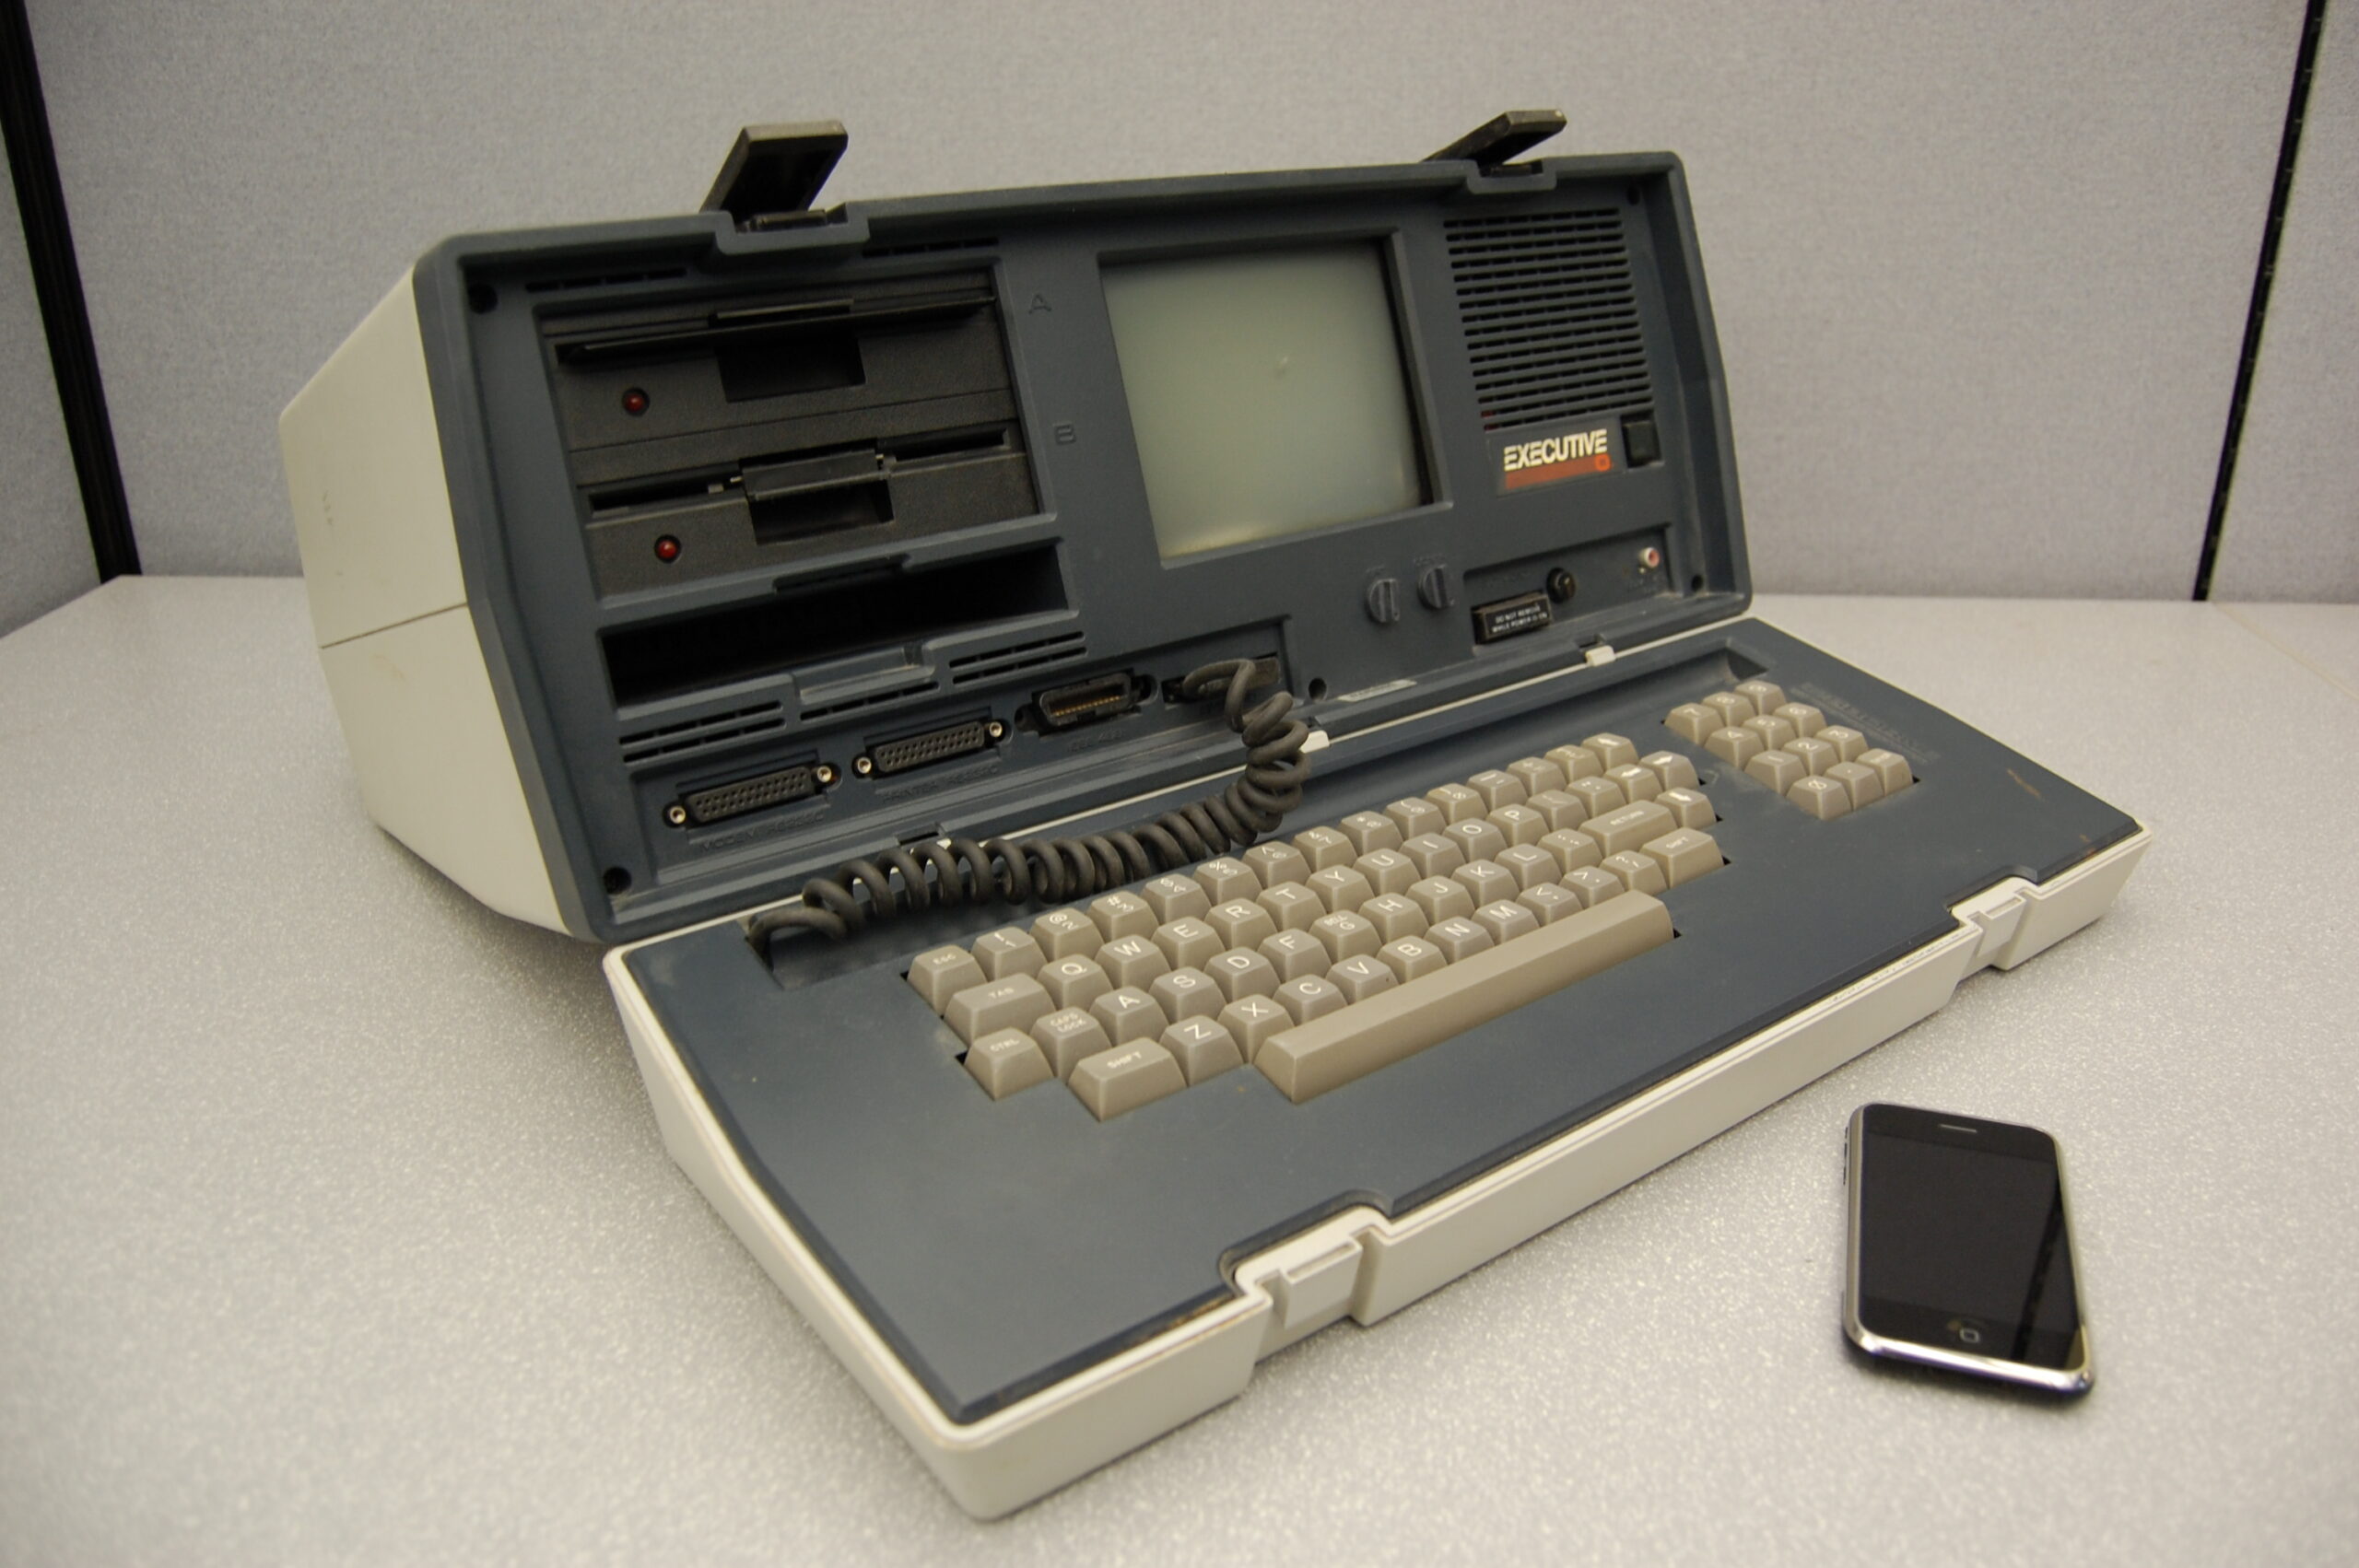 Sforum - Trang thông tin công nghệ mới nhất osborne-scaled Nhìn lại quá trình “tiến hóa” TRĂM NĂM của các thiết bị công nghệ (P2): Chiếc laptop đầu tiên nặng 11 ký 